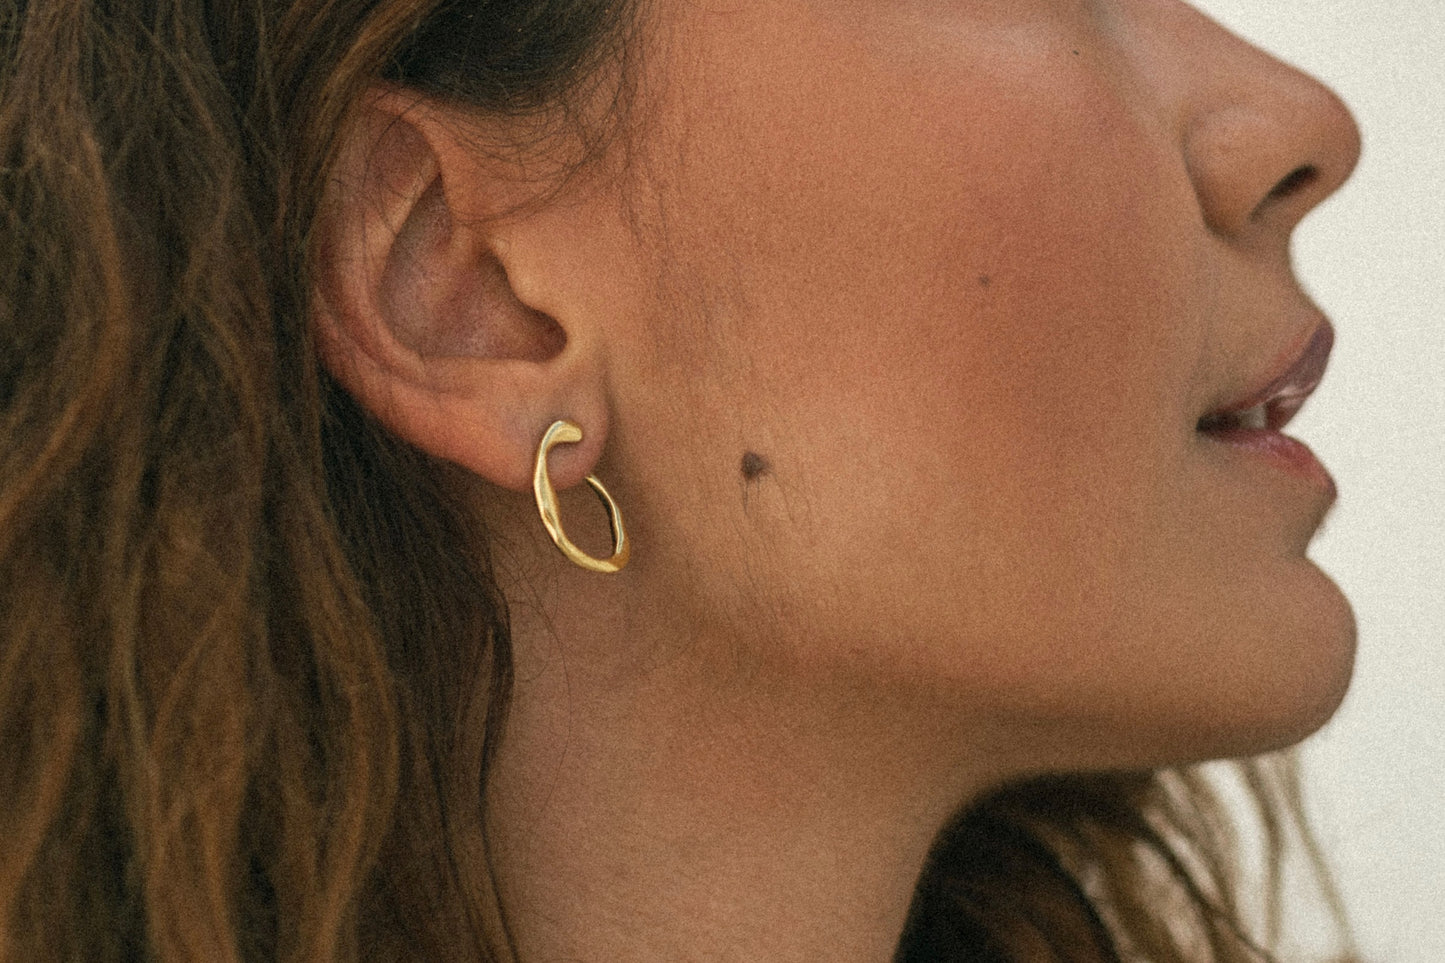 Motion earrings